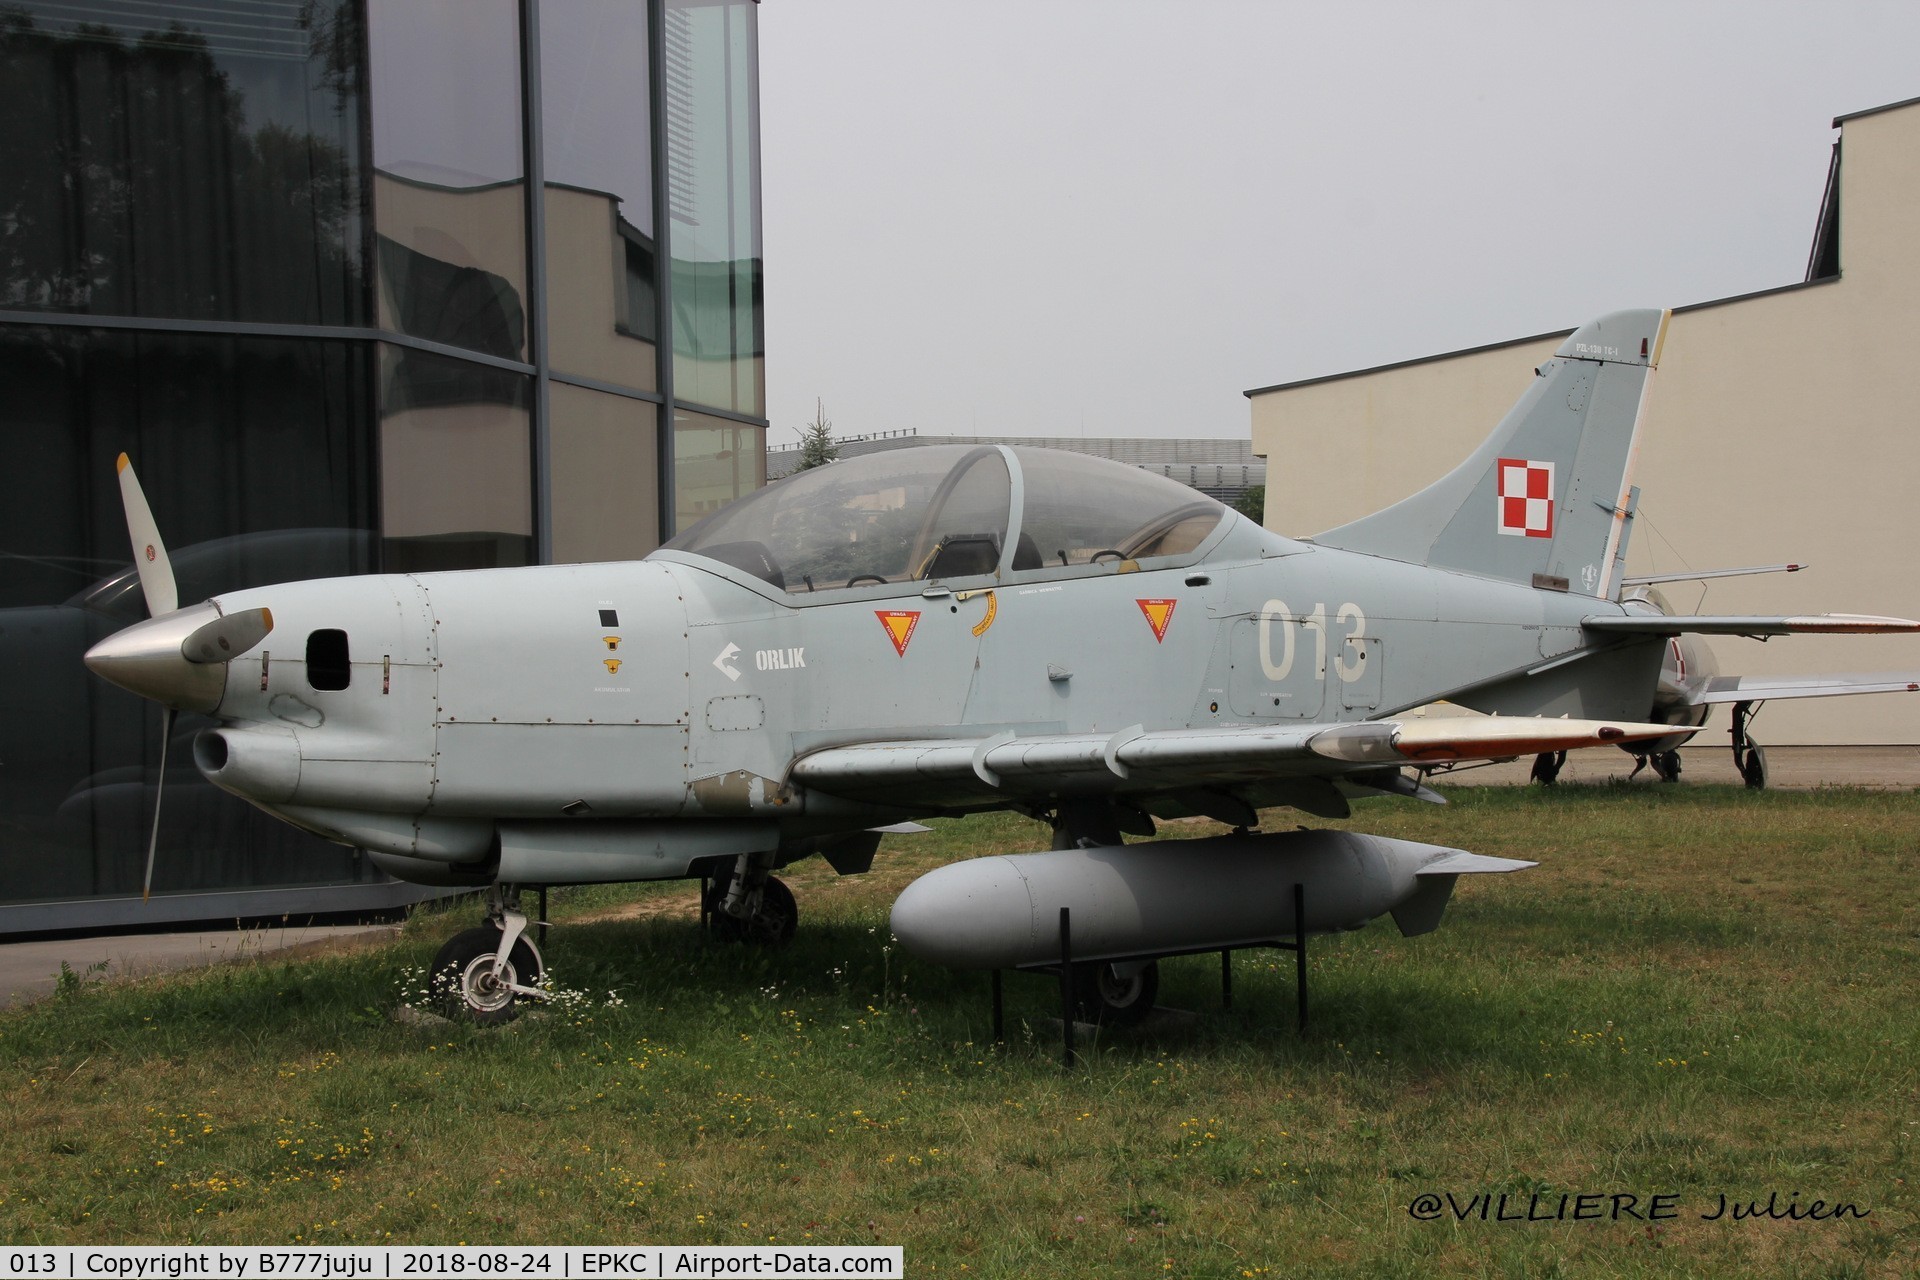 013, PZL-Okecie PZL-130TC-1 Turbo Orlik C/N 02920013, at Craocovia